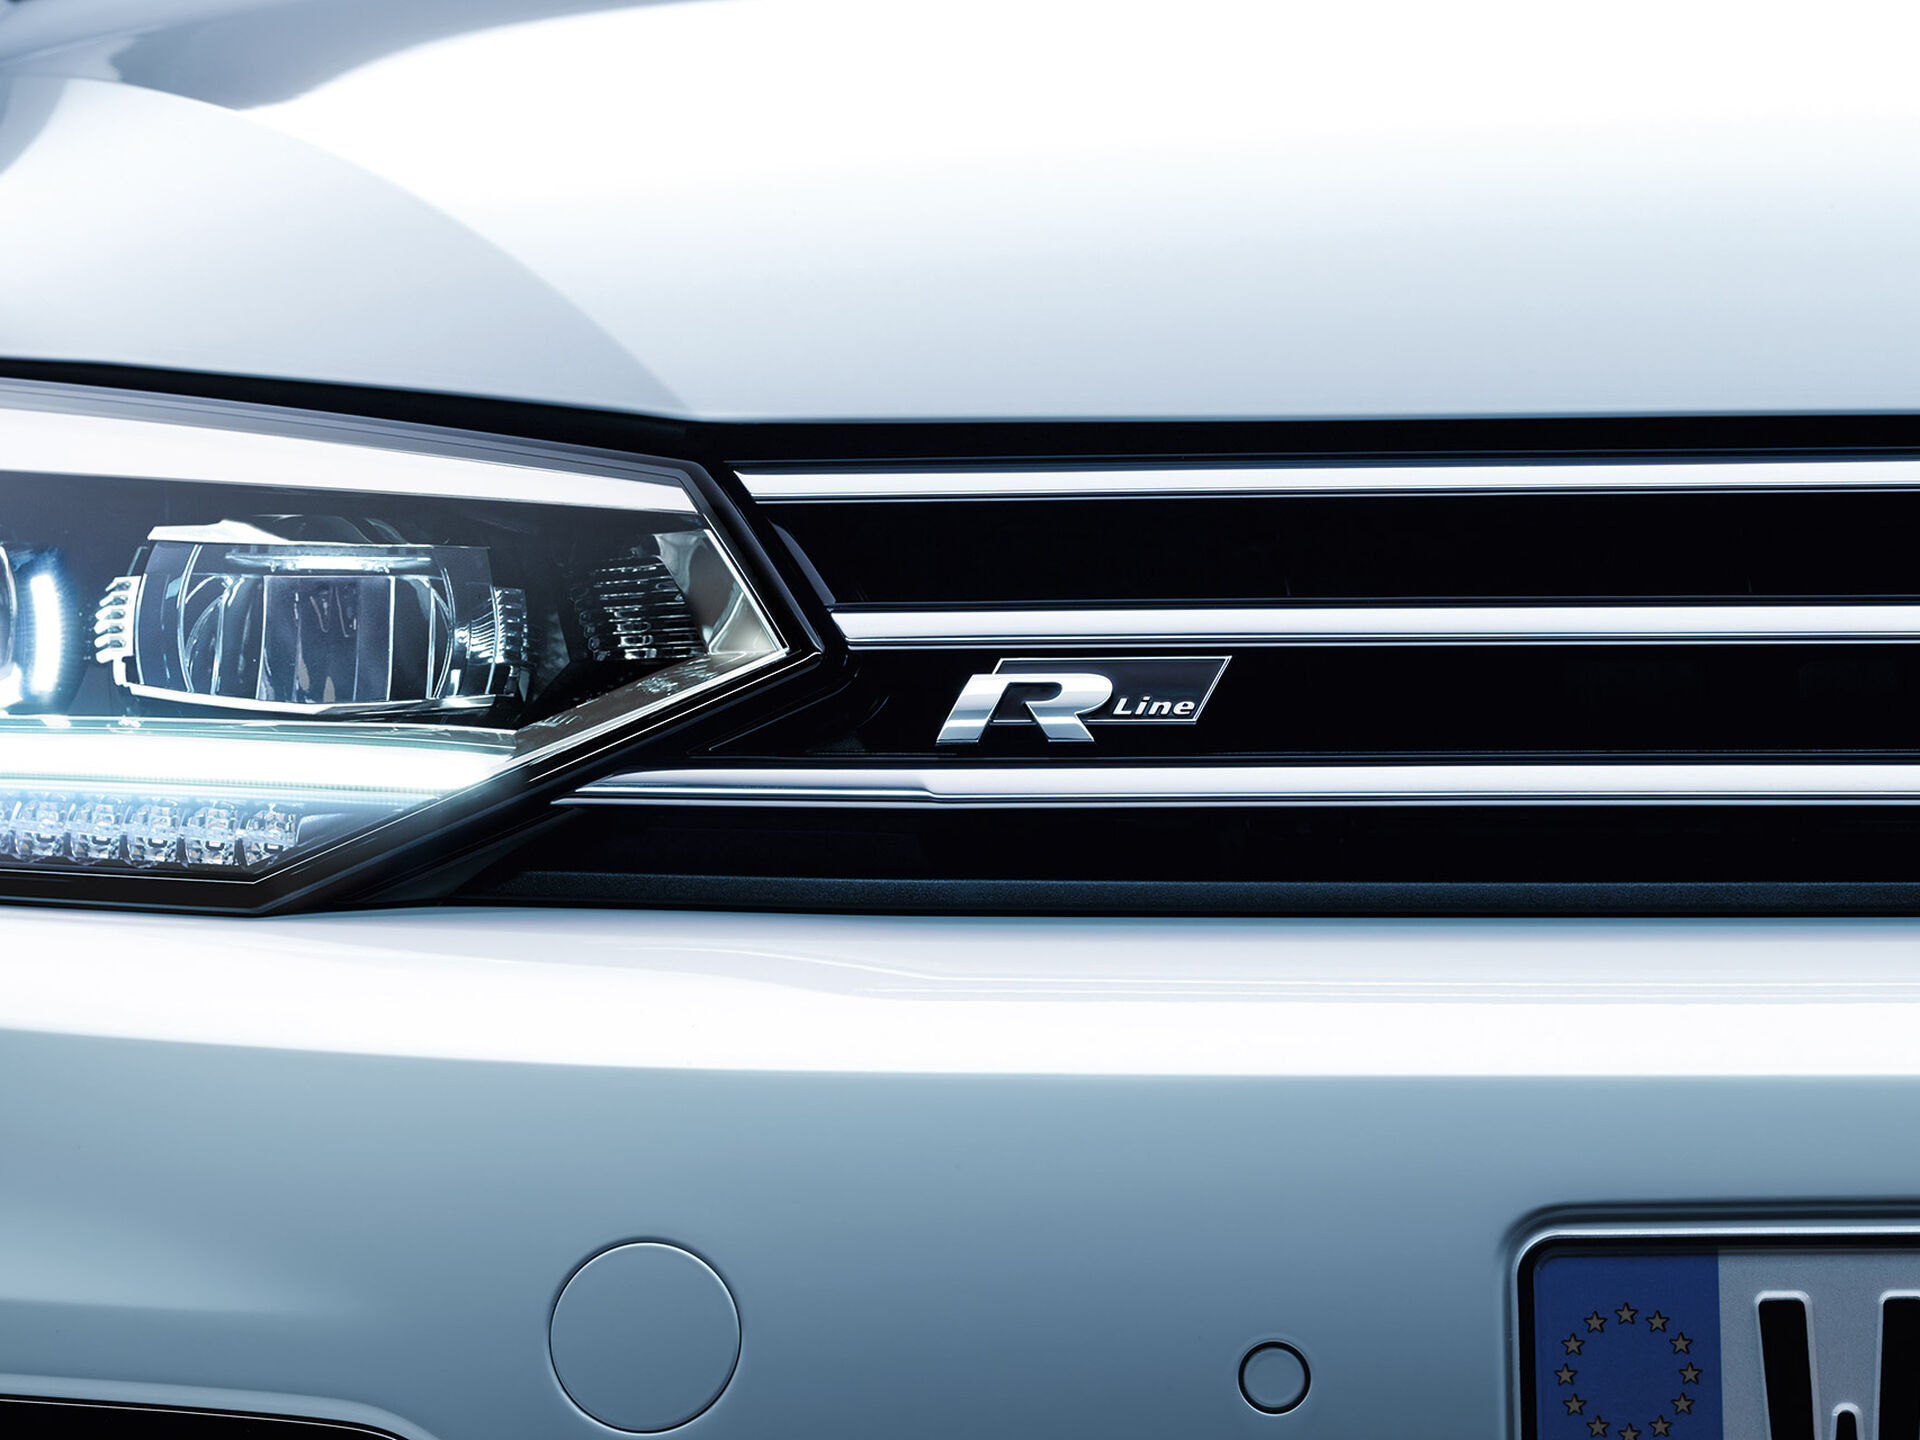 Pormenor da frente do VW Touran com faróis cortados e o logótipo "R-Line" na grelha do radiador